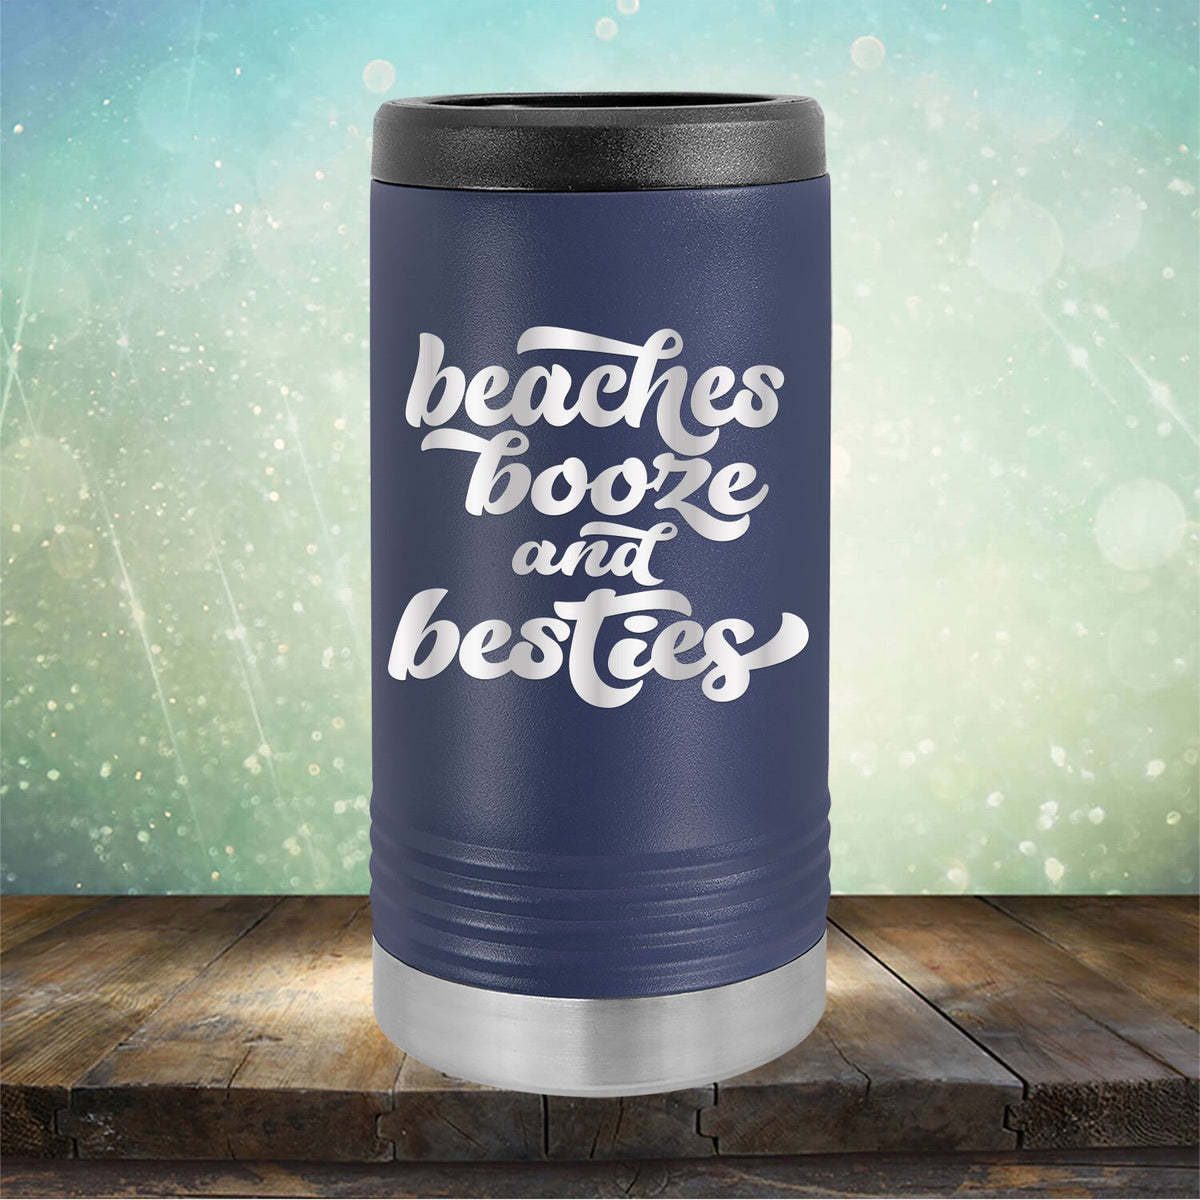 Beaches Booze and Besties